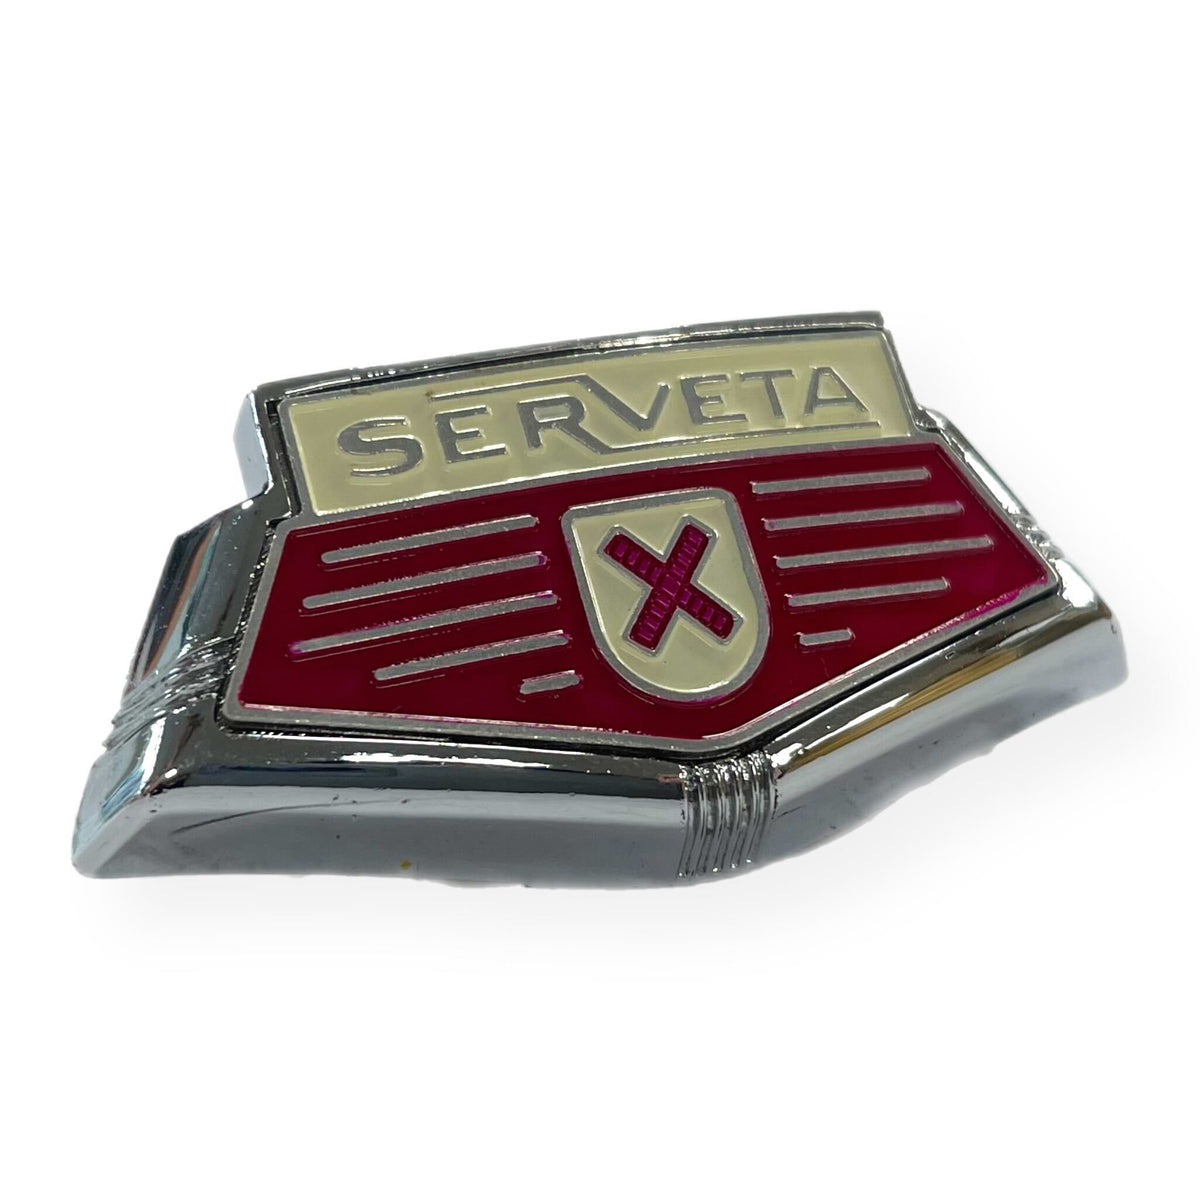 Lambretta Serveta Horncover Horncast Badge Shield